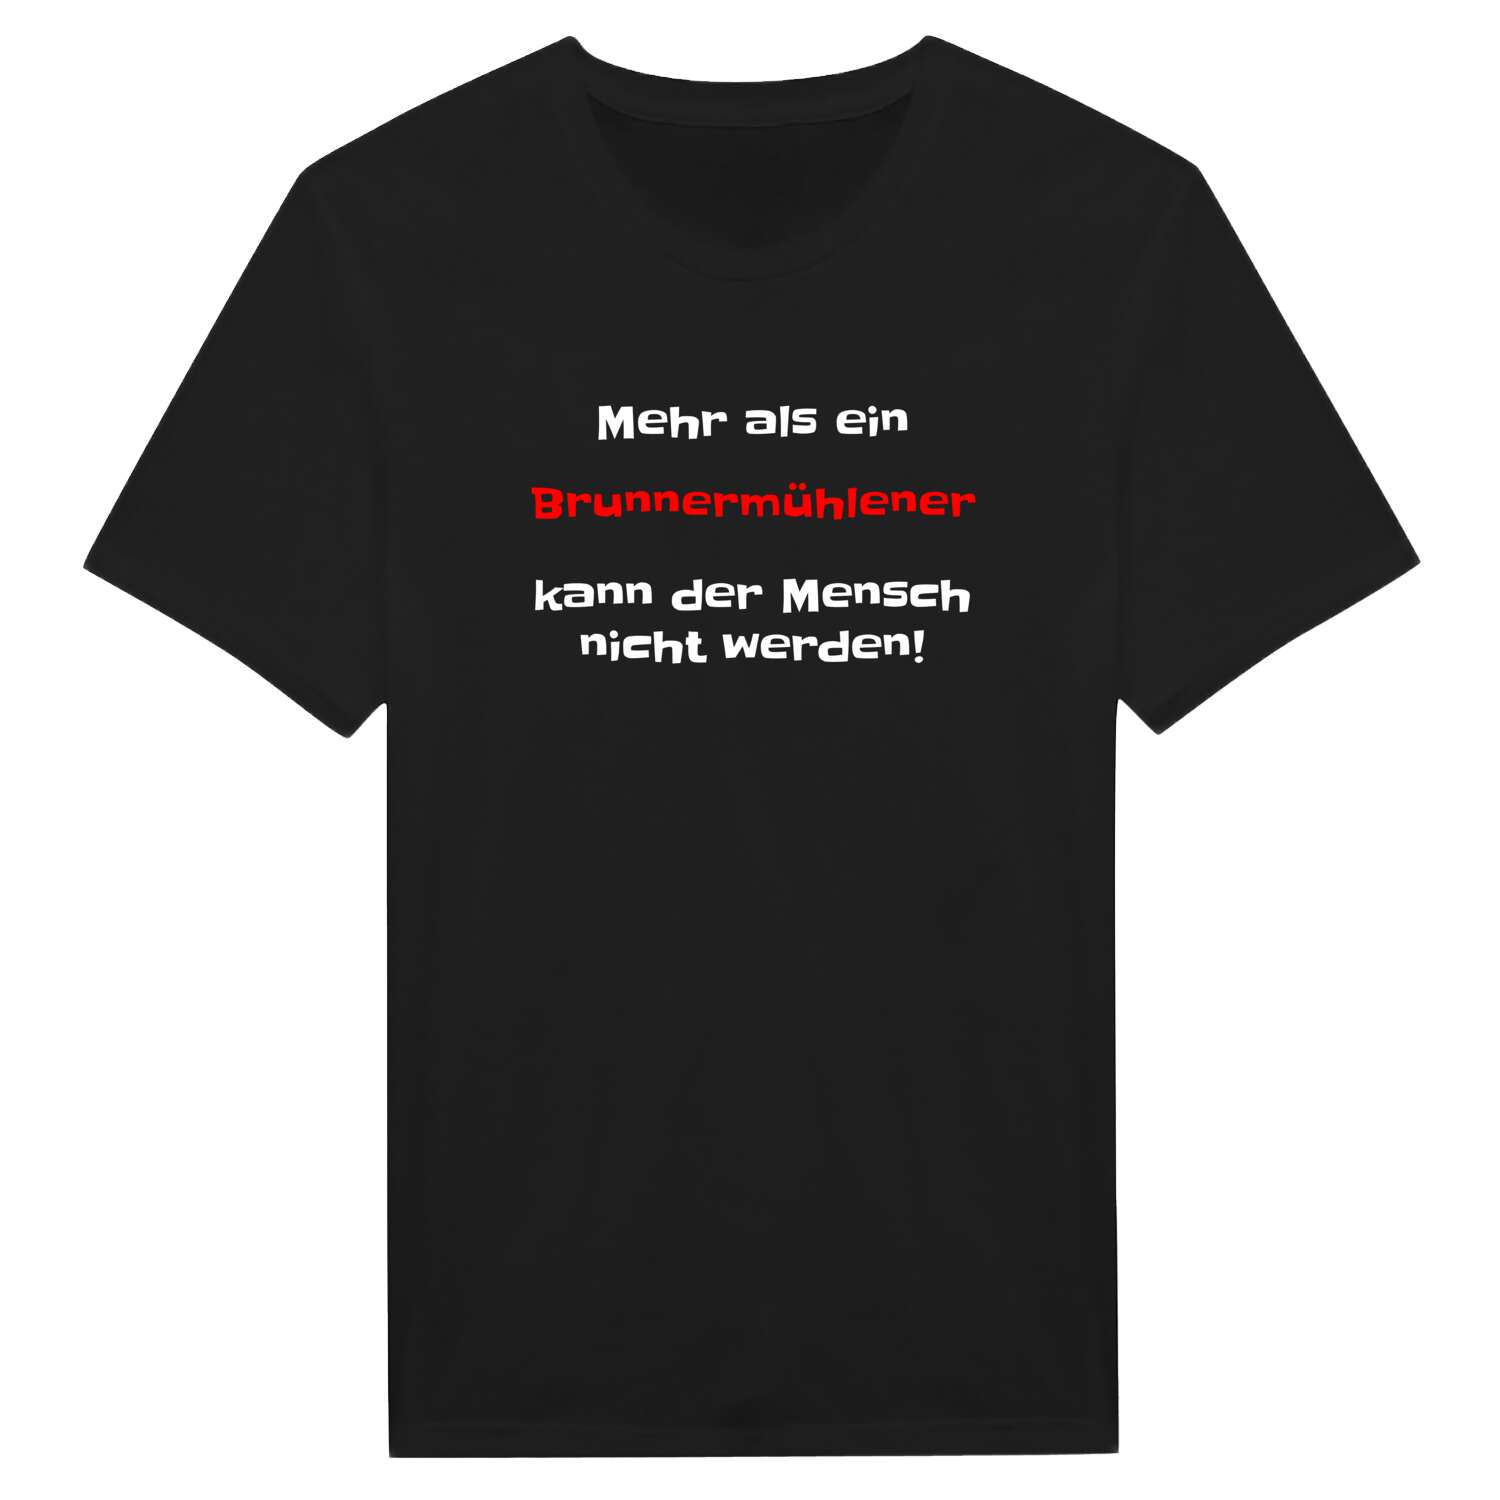 Brunnermühle T-Shirt »Mehr als ein«